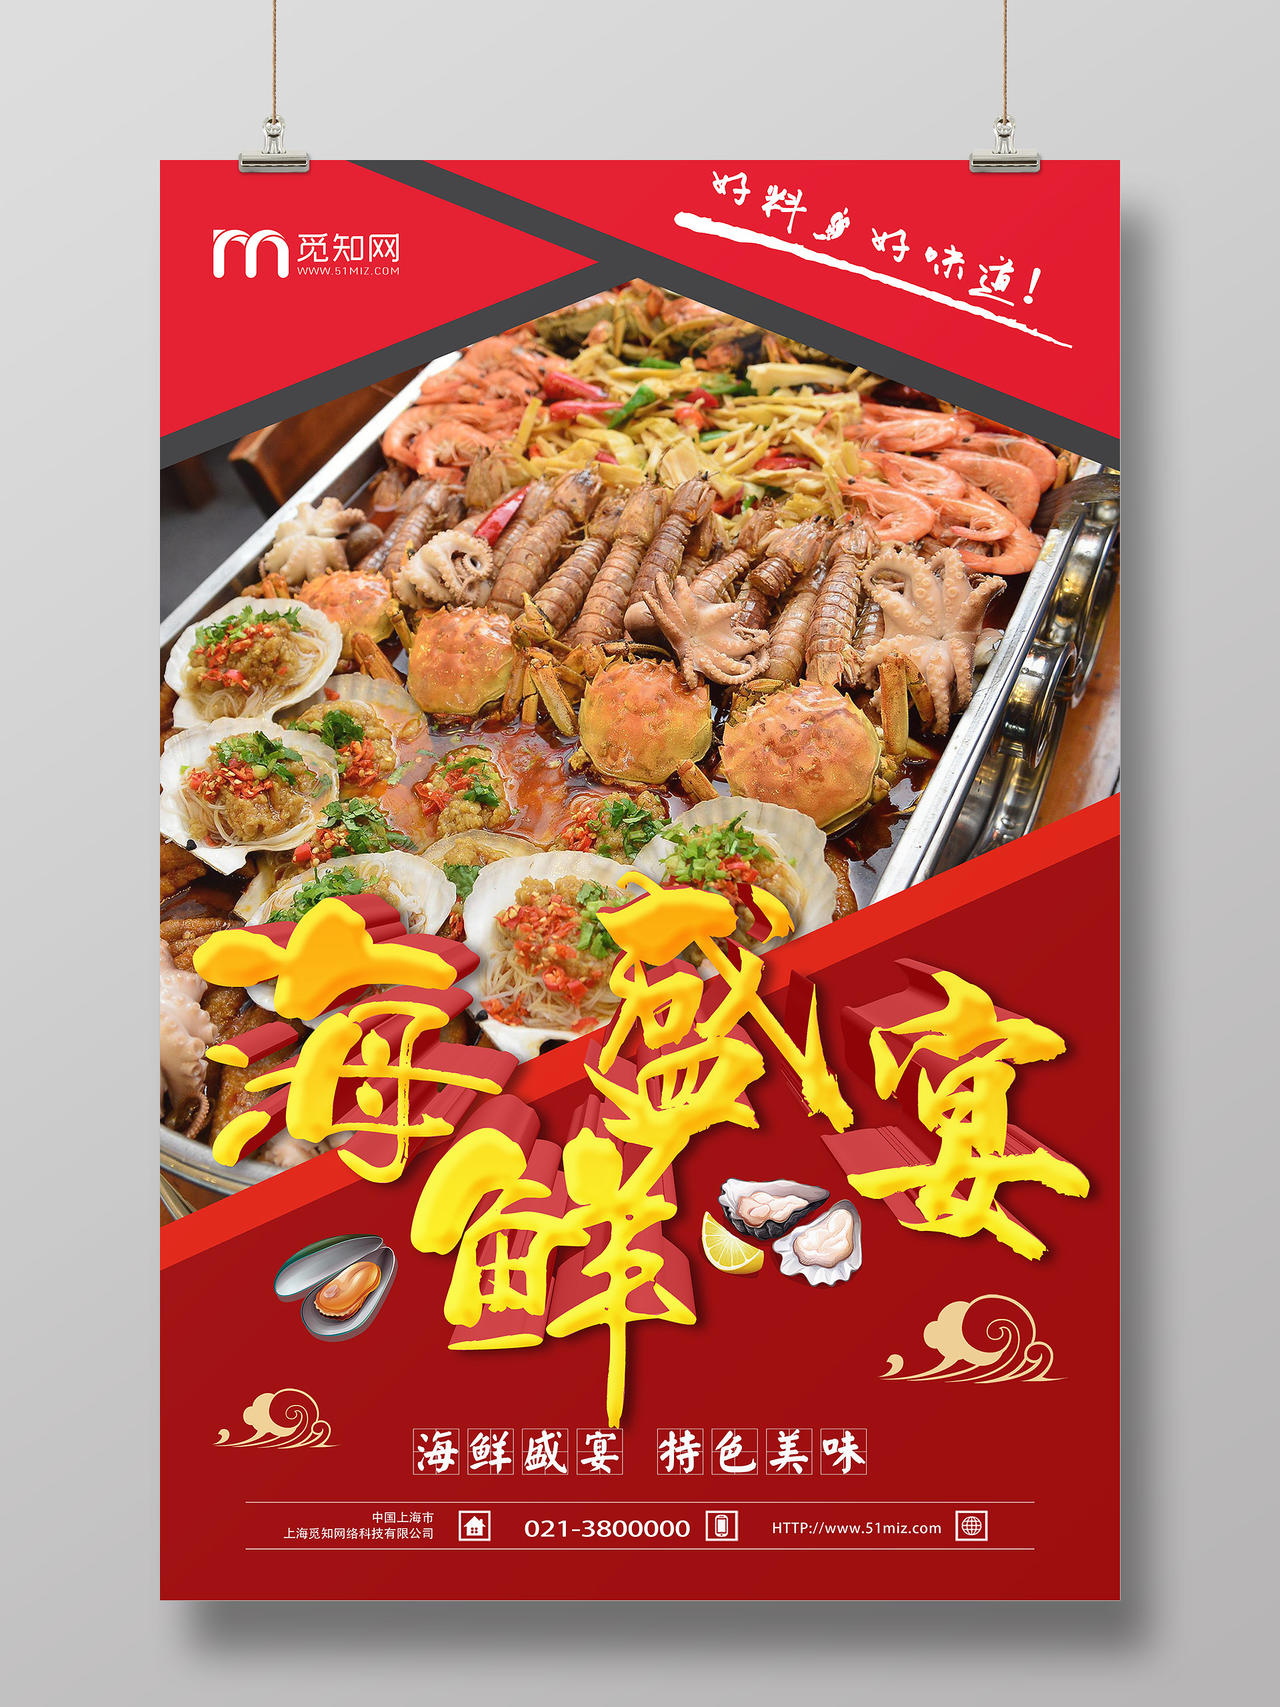 简单大气红色美食海鲜盛宴宣传海报